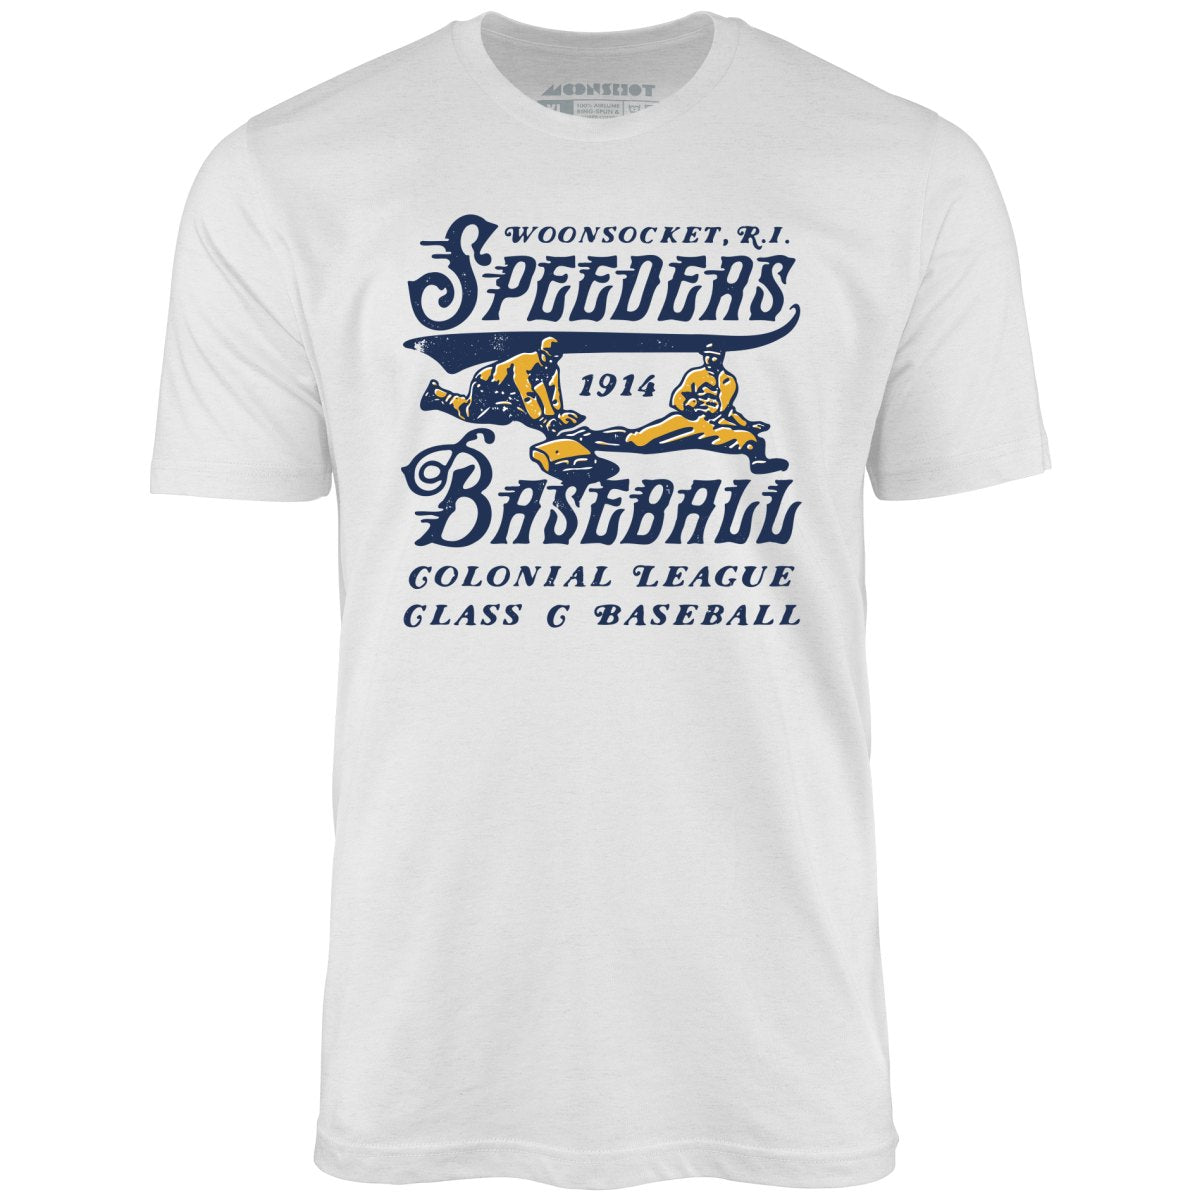 Woonsocket Speeders - Rhode Island - Vintage Defunct Baseball Teams - Unisex T-Shirt